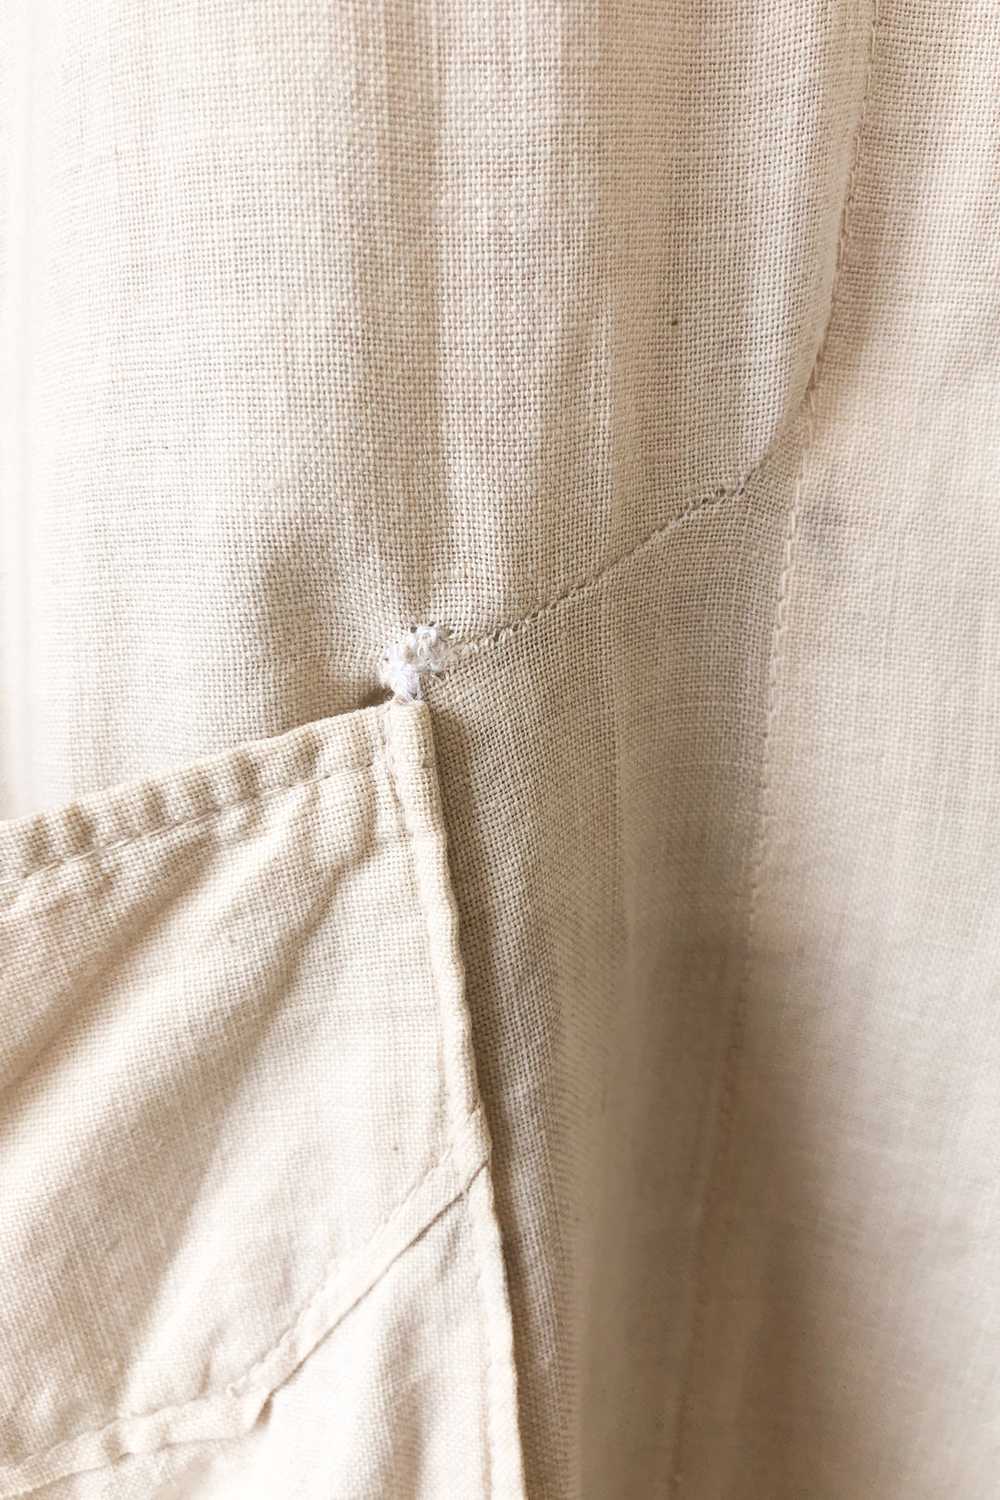 Vintage White Cotton Duster Coat - image 9